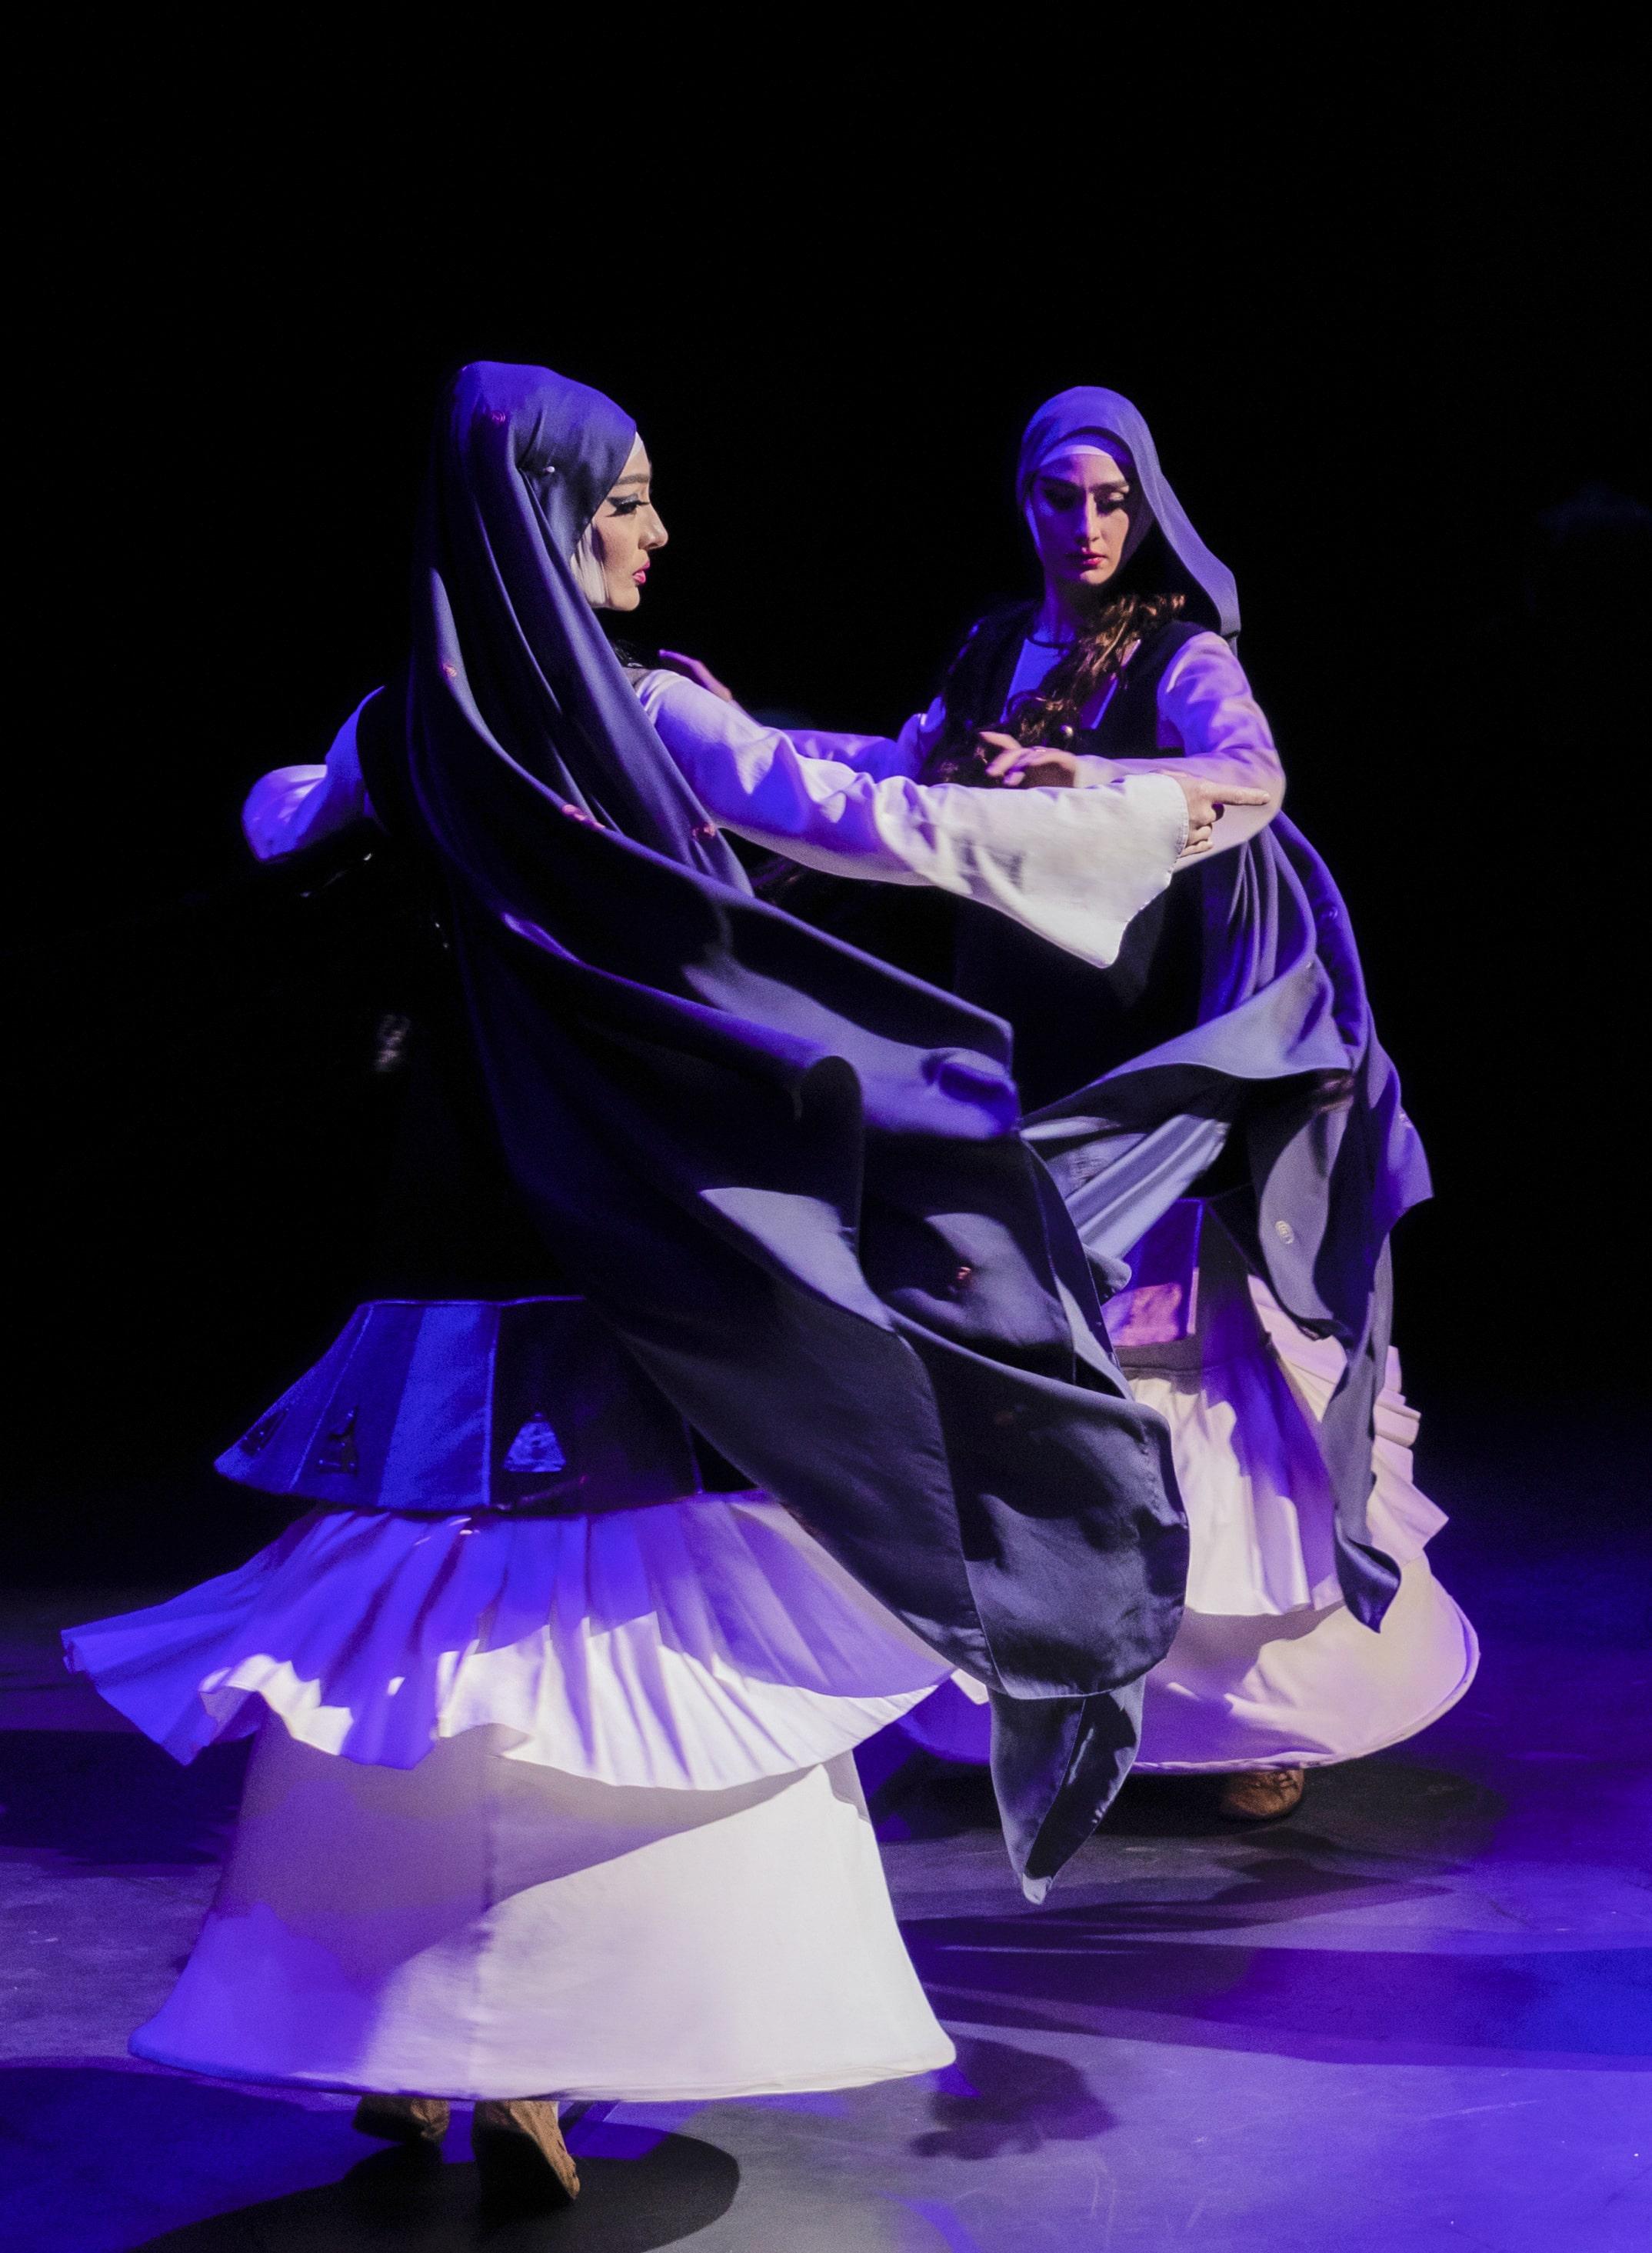 康樂及文化事務署邀得格魯吉亞國家舞蹈團於五月三十一日及六月一日在沙田大會堂演出。圖示格魯吉亞國家舞蹈團過往演出劇照。